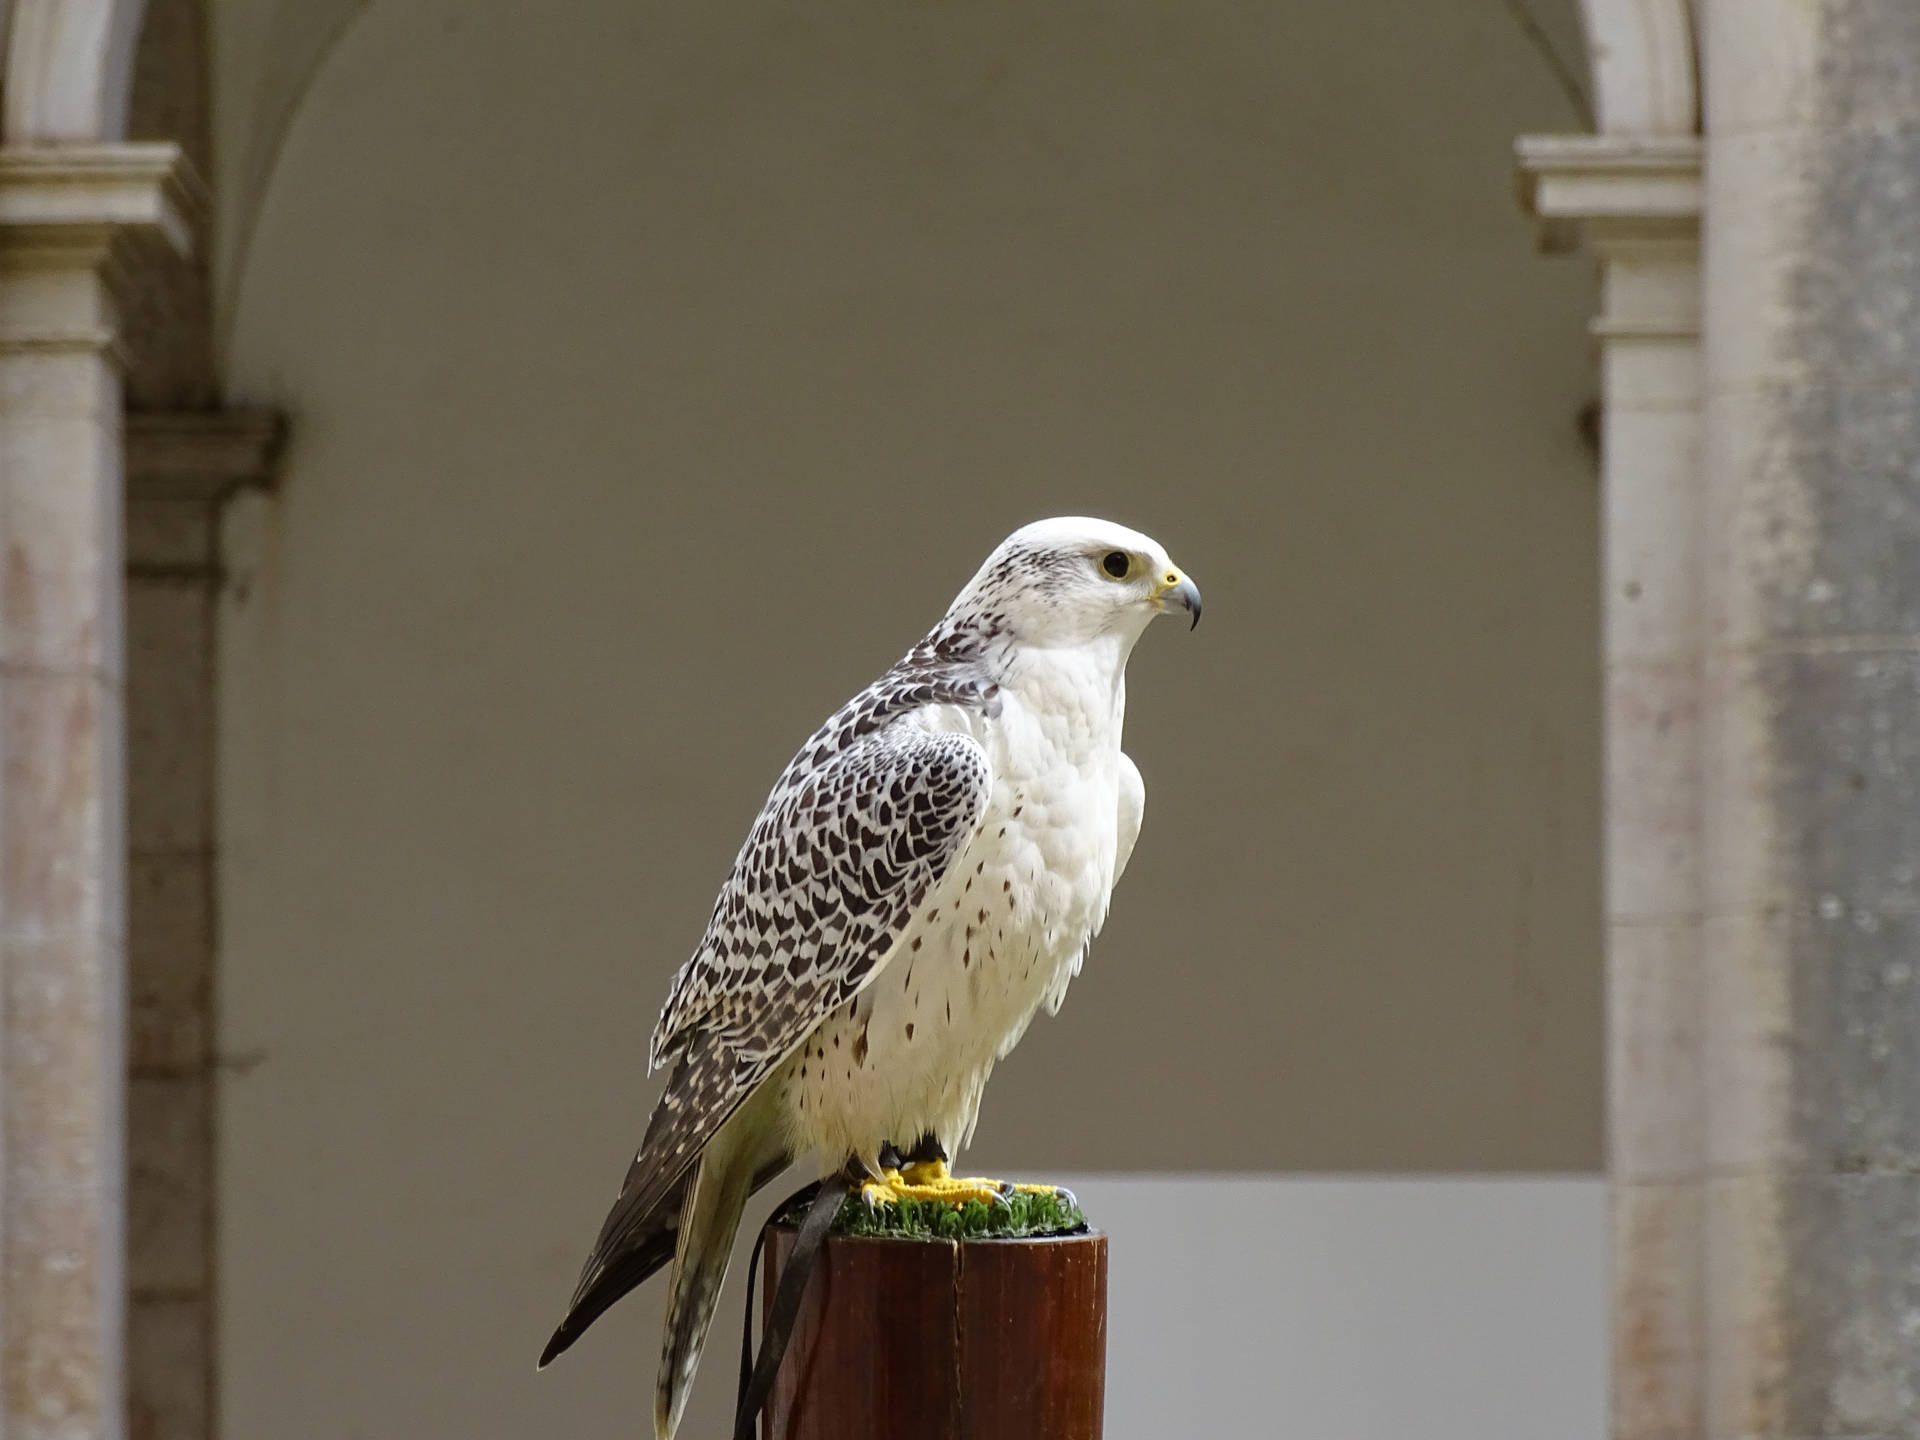 White Falcon With Black Specks